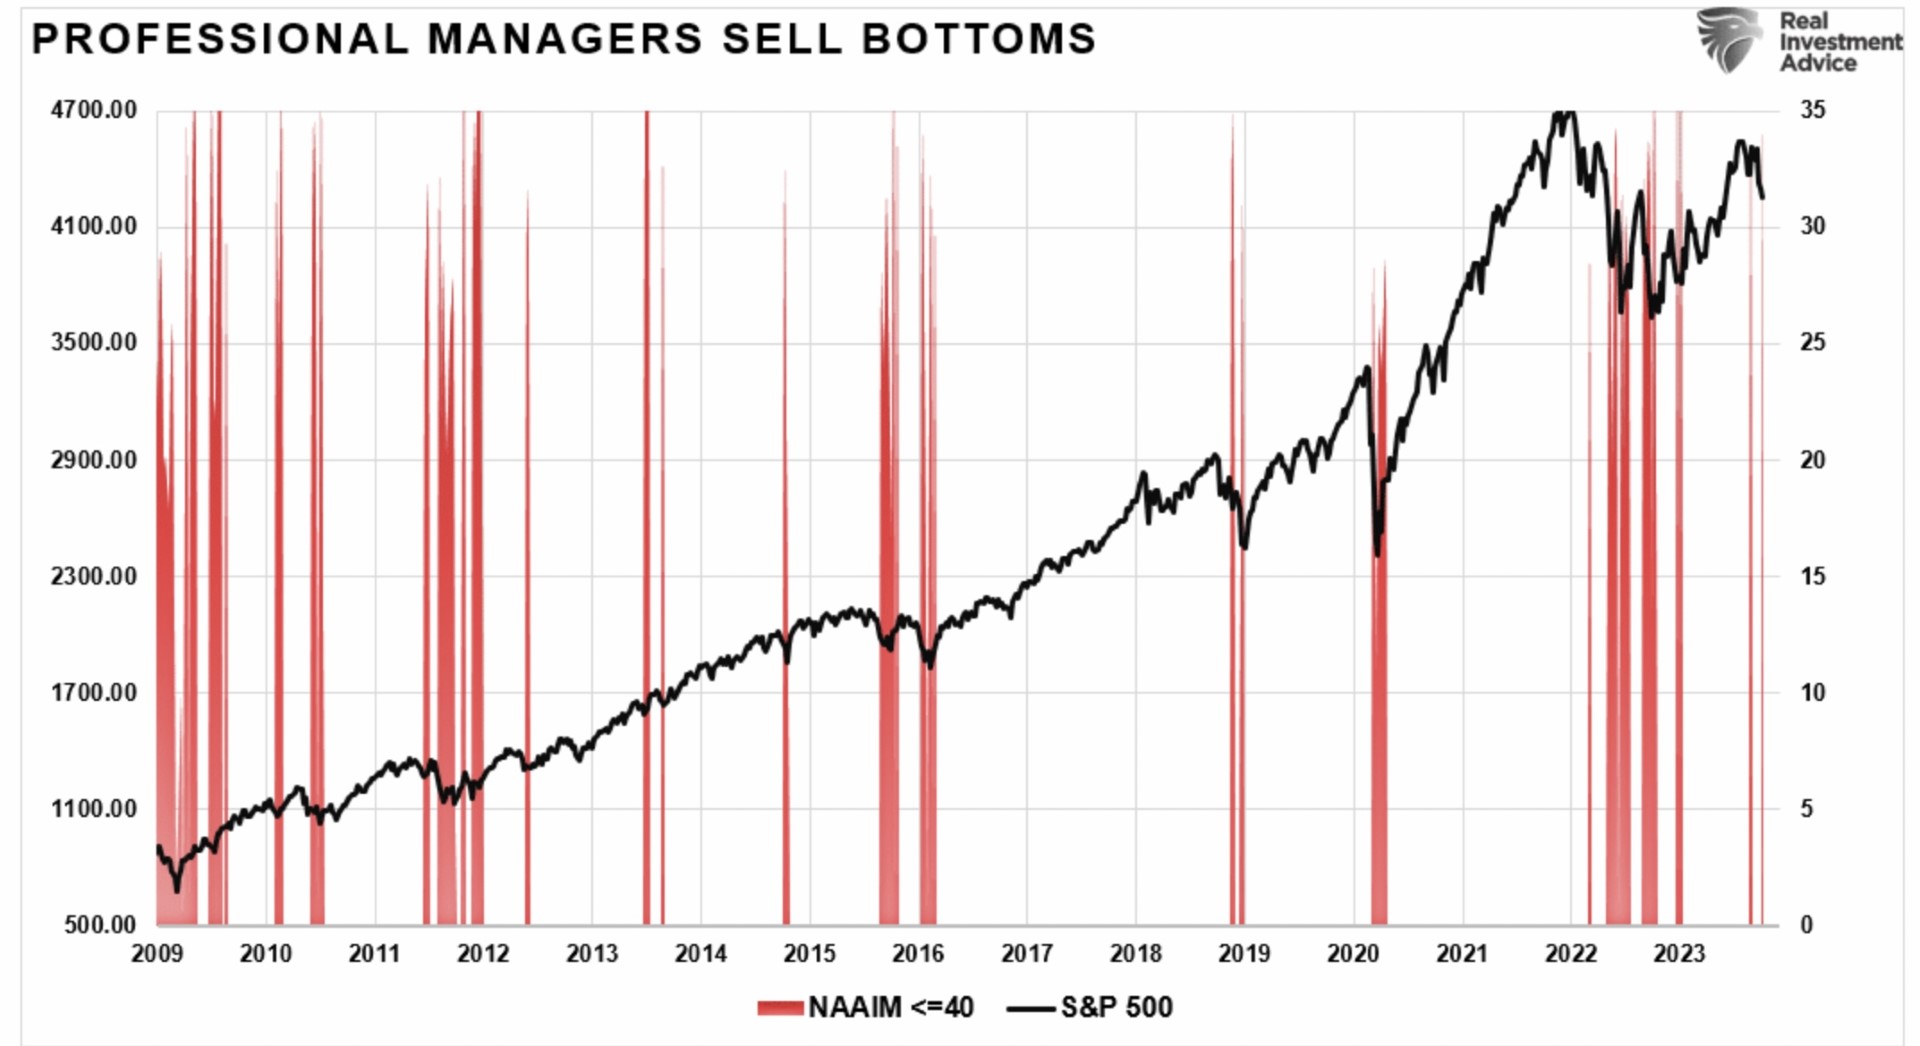 Falsche Einschätzung der Profi-Anleger für den S&P 500